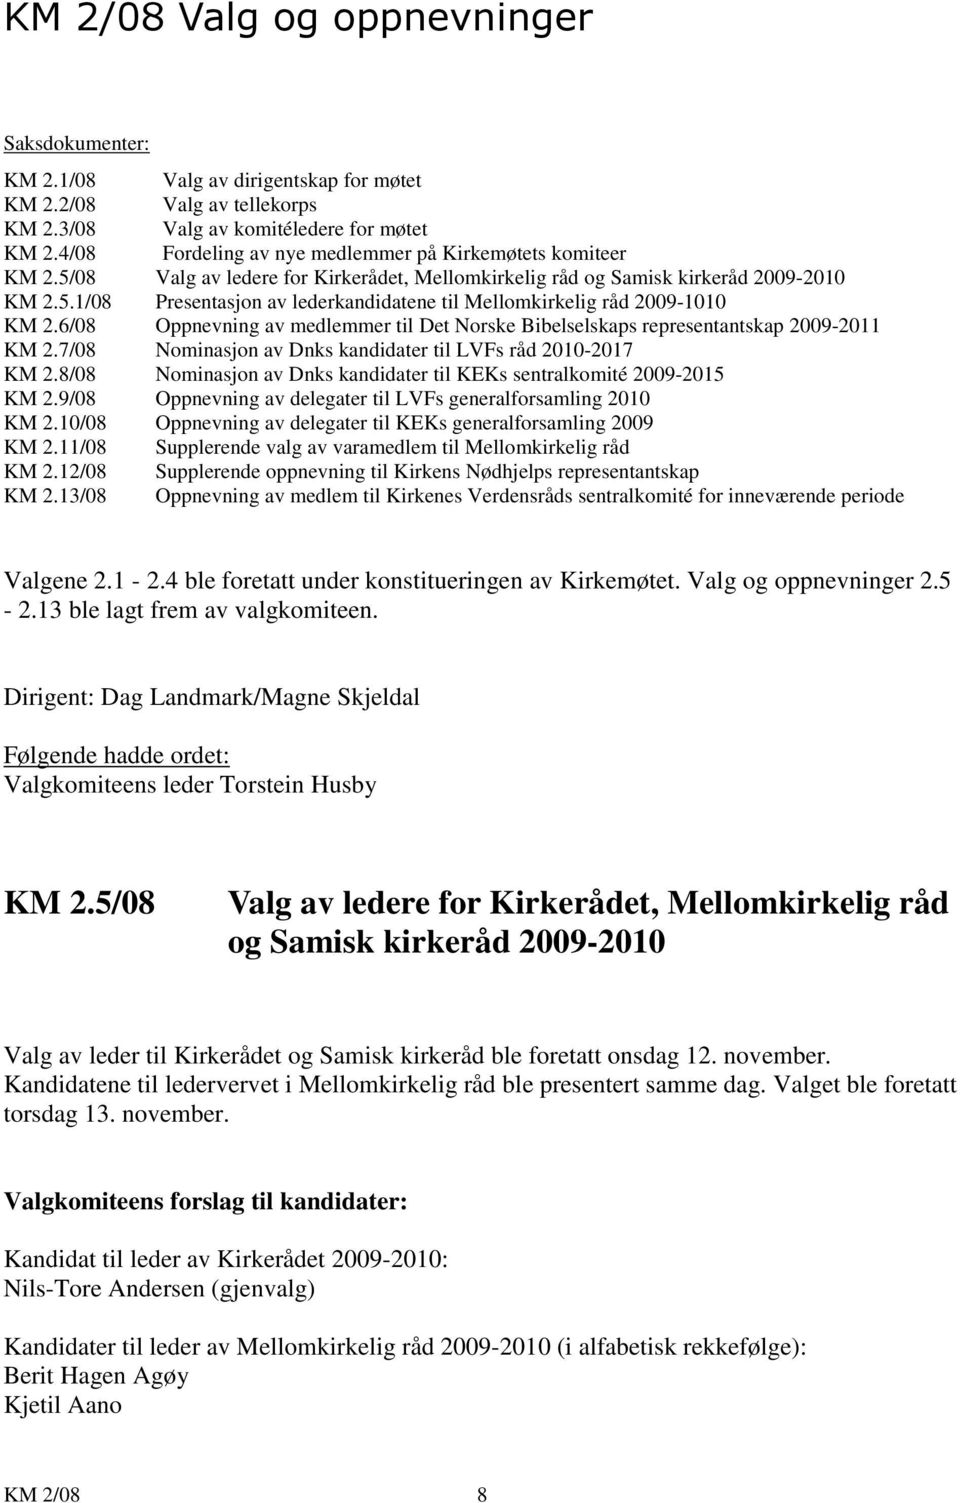 6/08 Oppnevning av medlemmer til Det Norske Bibelselskaps representantskap 2009-2011 KM 2.7/08 Nominasjon av Dnks kandidater til LVFs råd 2010-2017 KM 2.